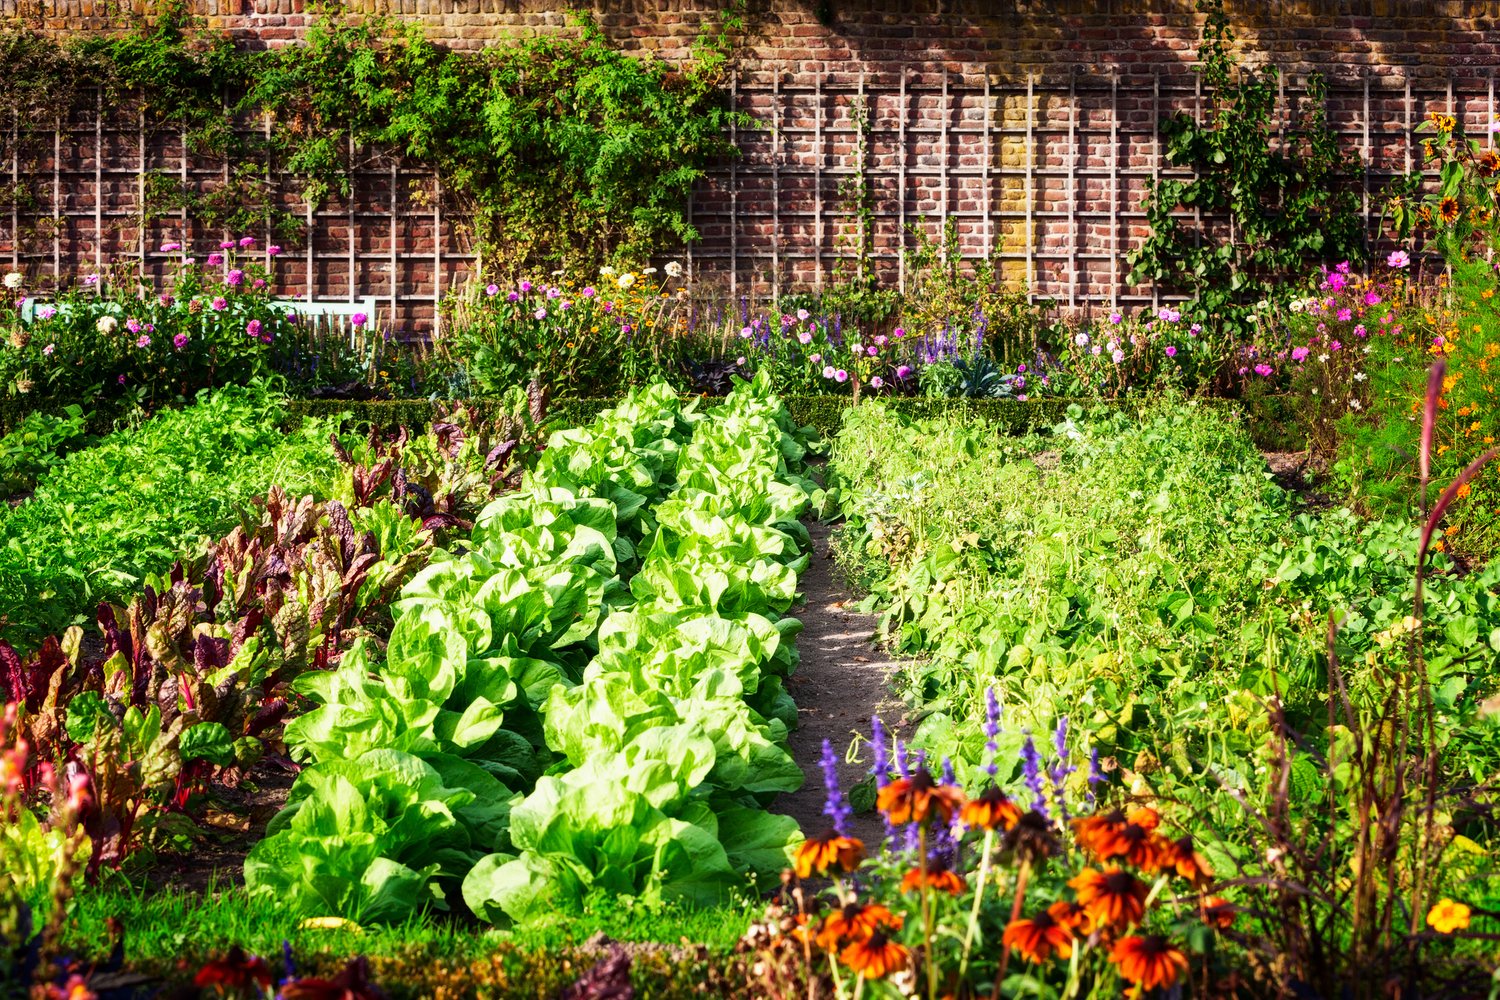 Kako zasaditi zelenjavni vrt doma?